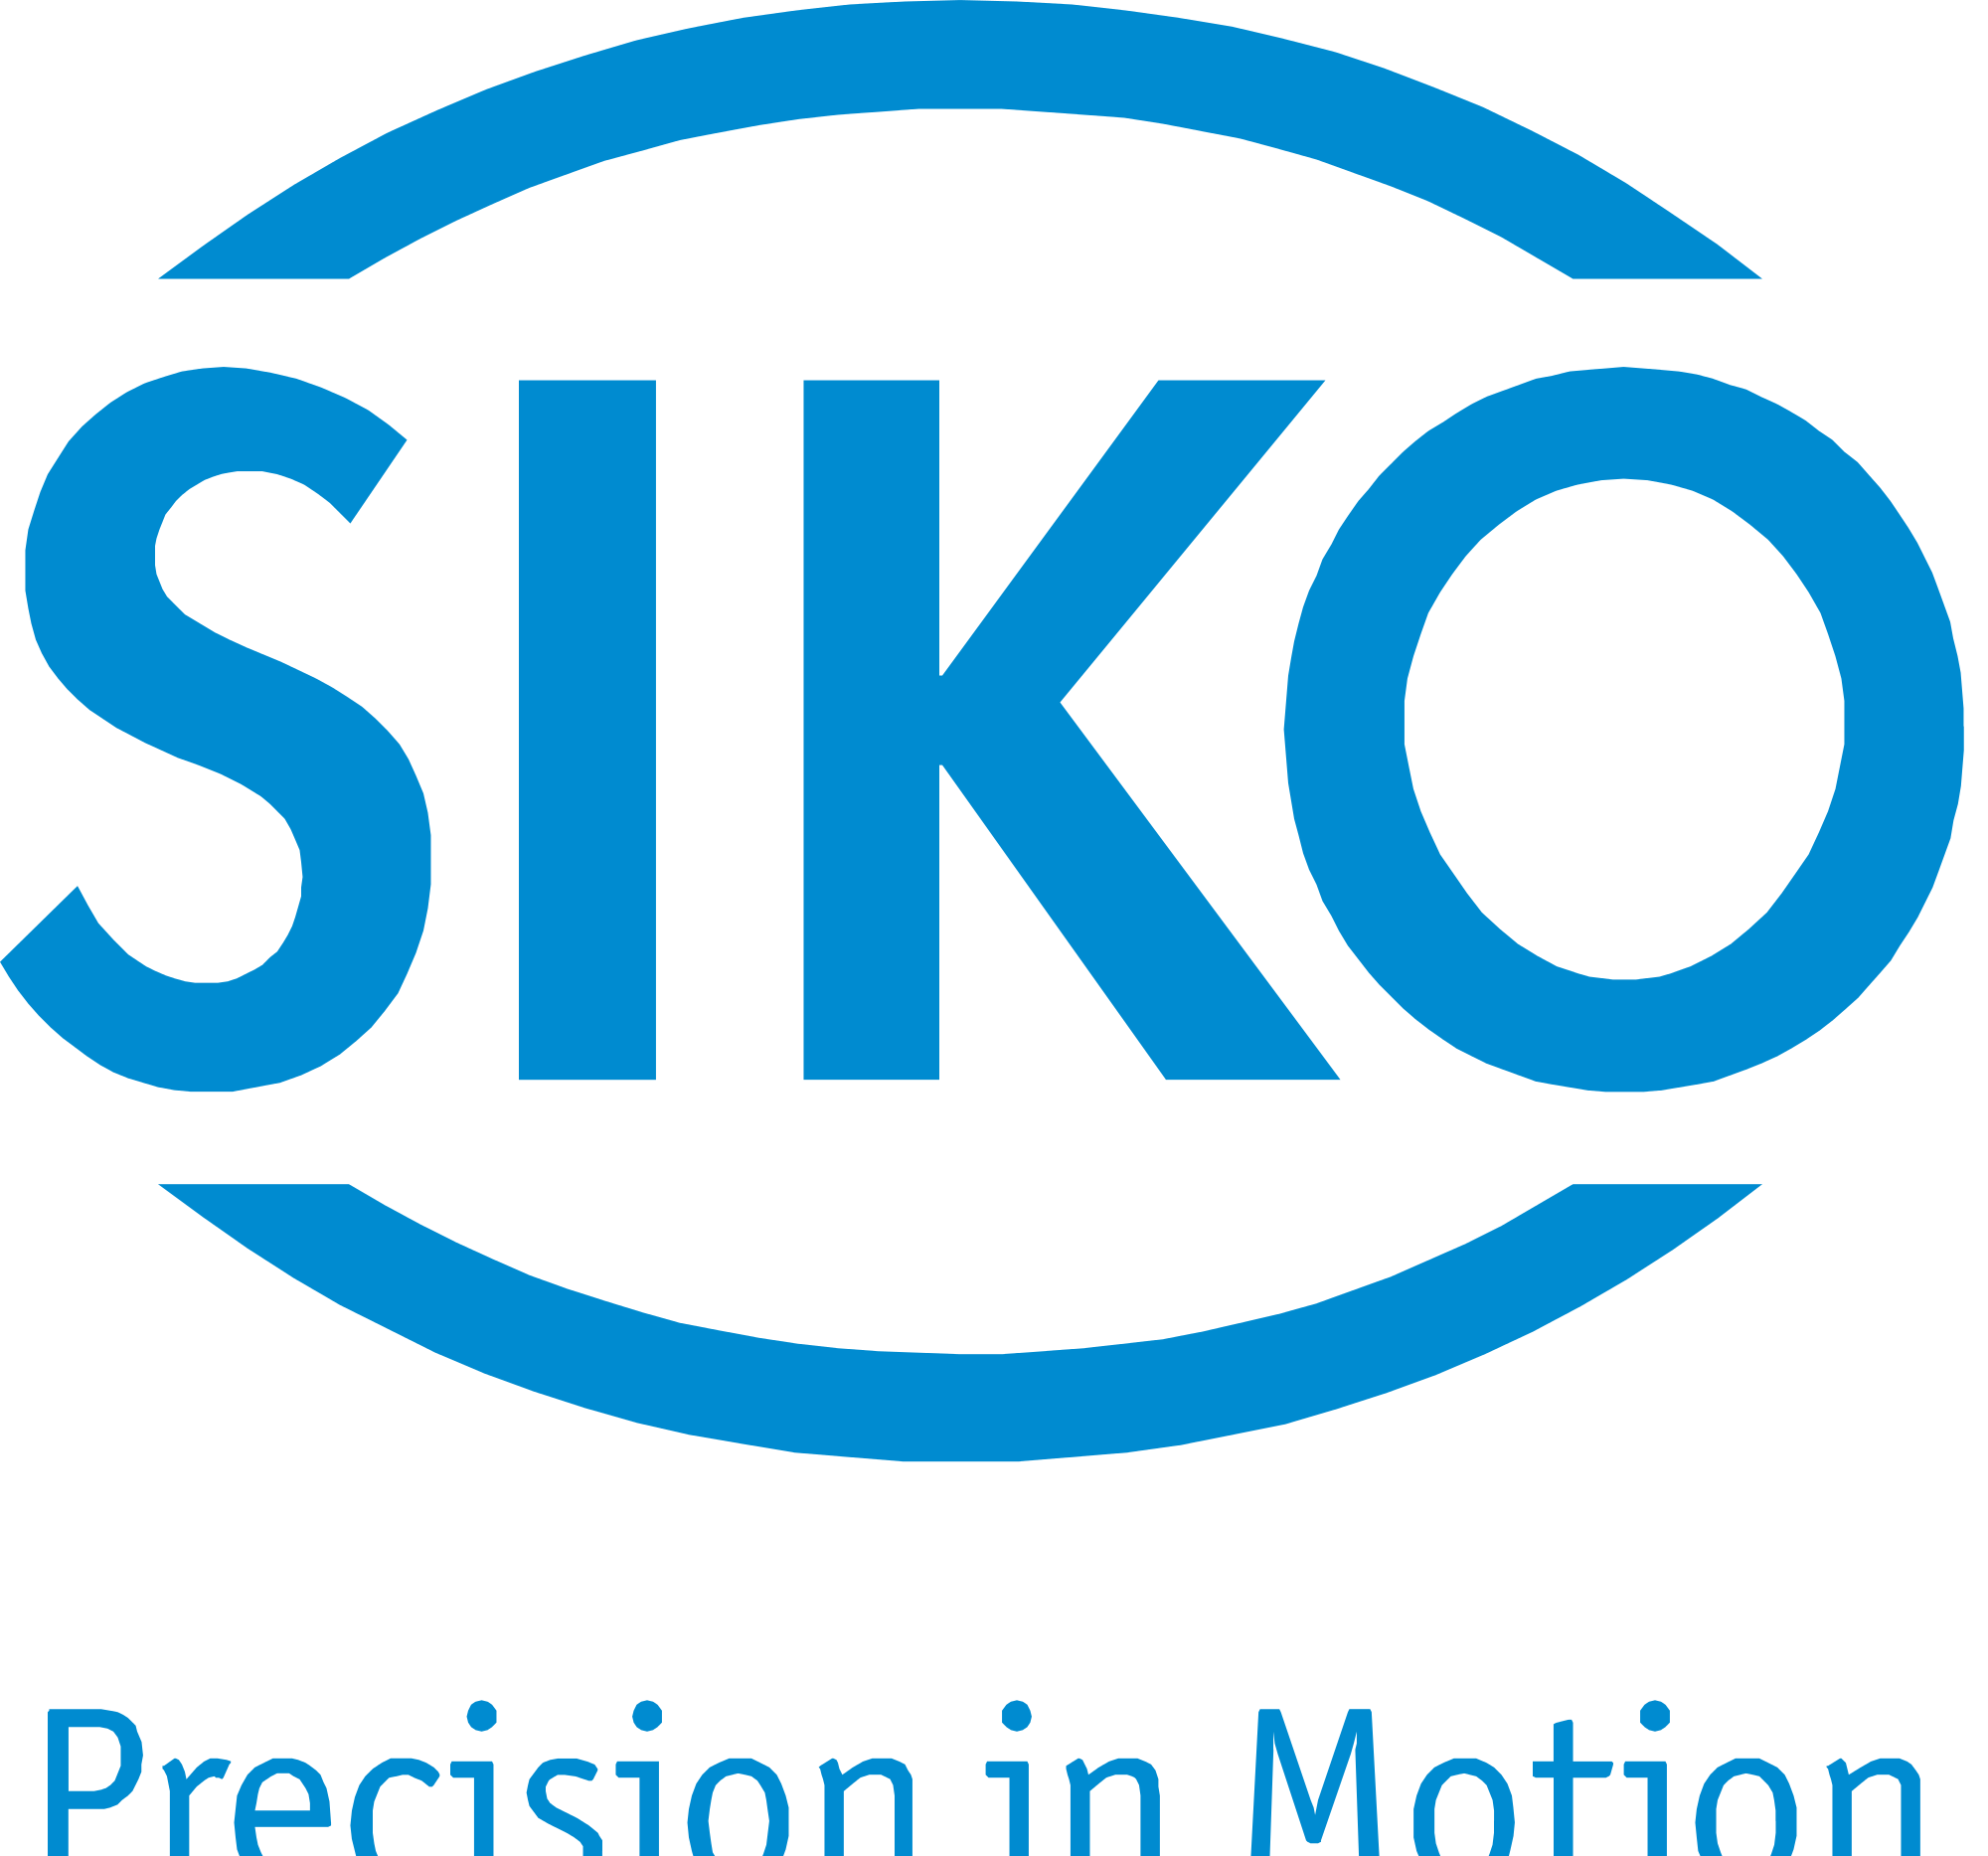 Siko given name